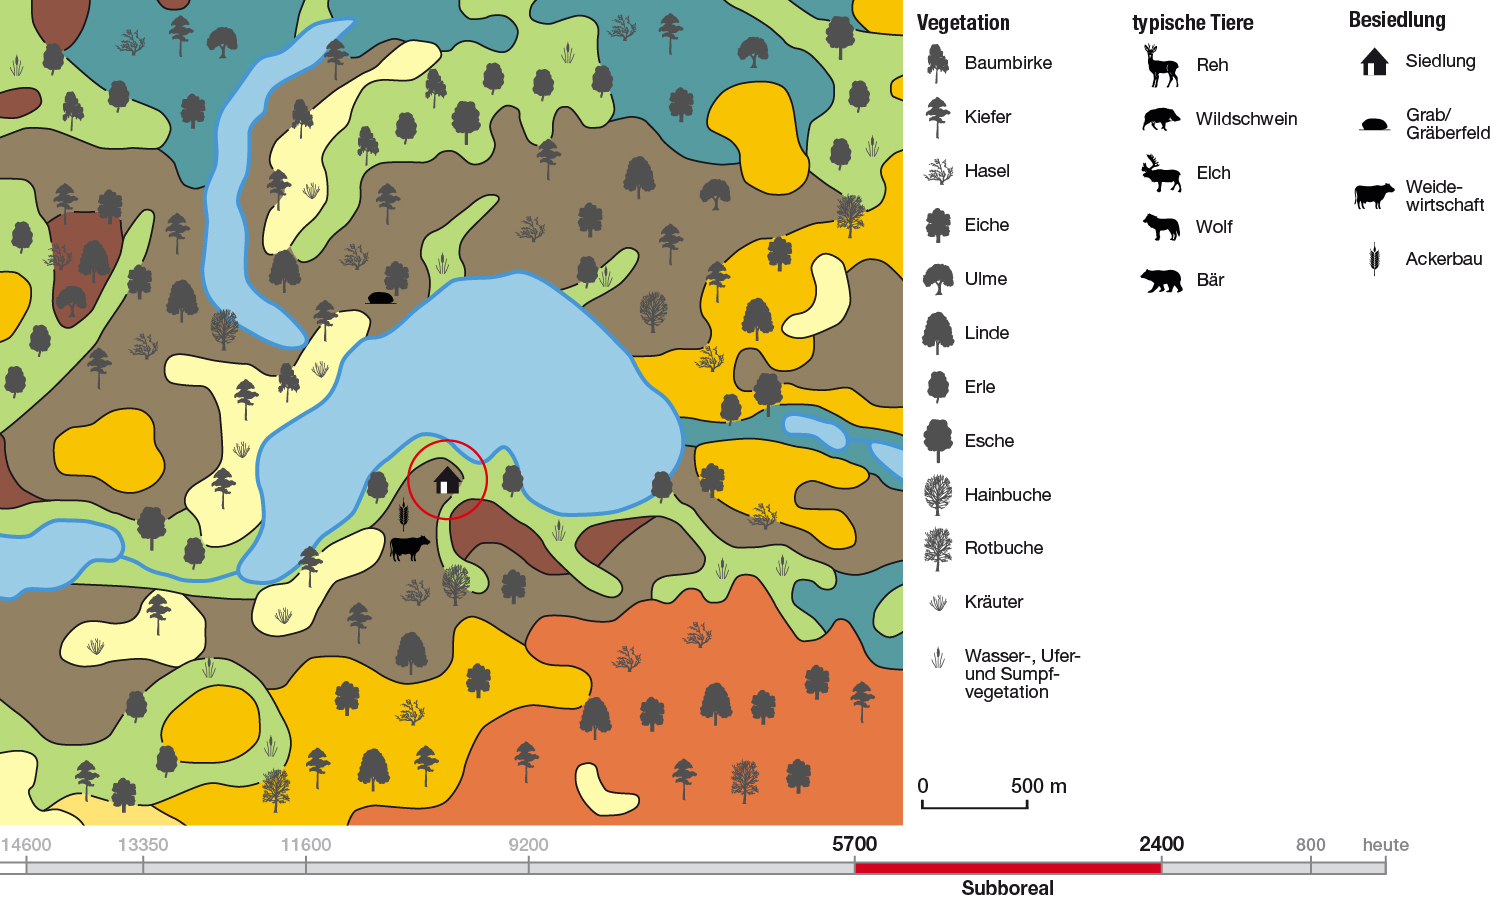 Abb. 8: Landschaft und Vegetation am Wandlitzer See im Subboreal – 5700–2400 Jahre vor heute